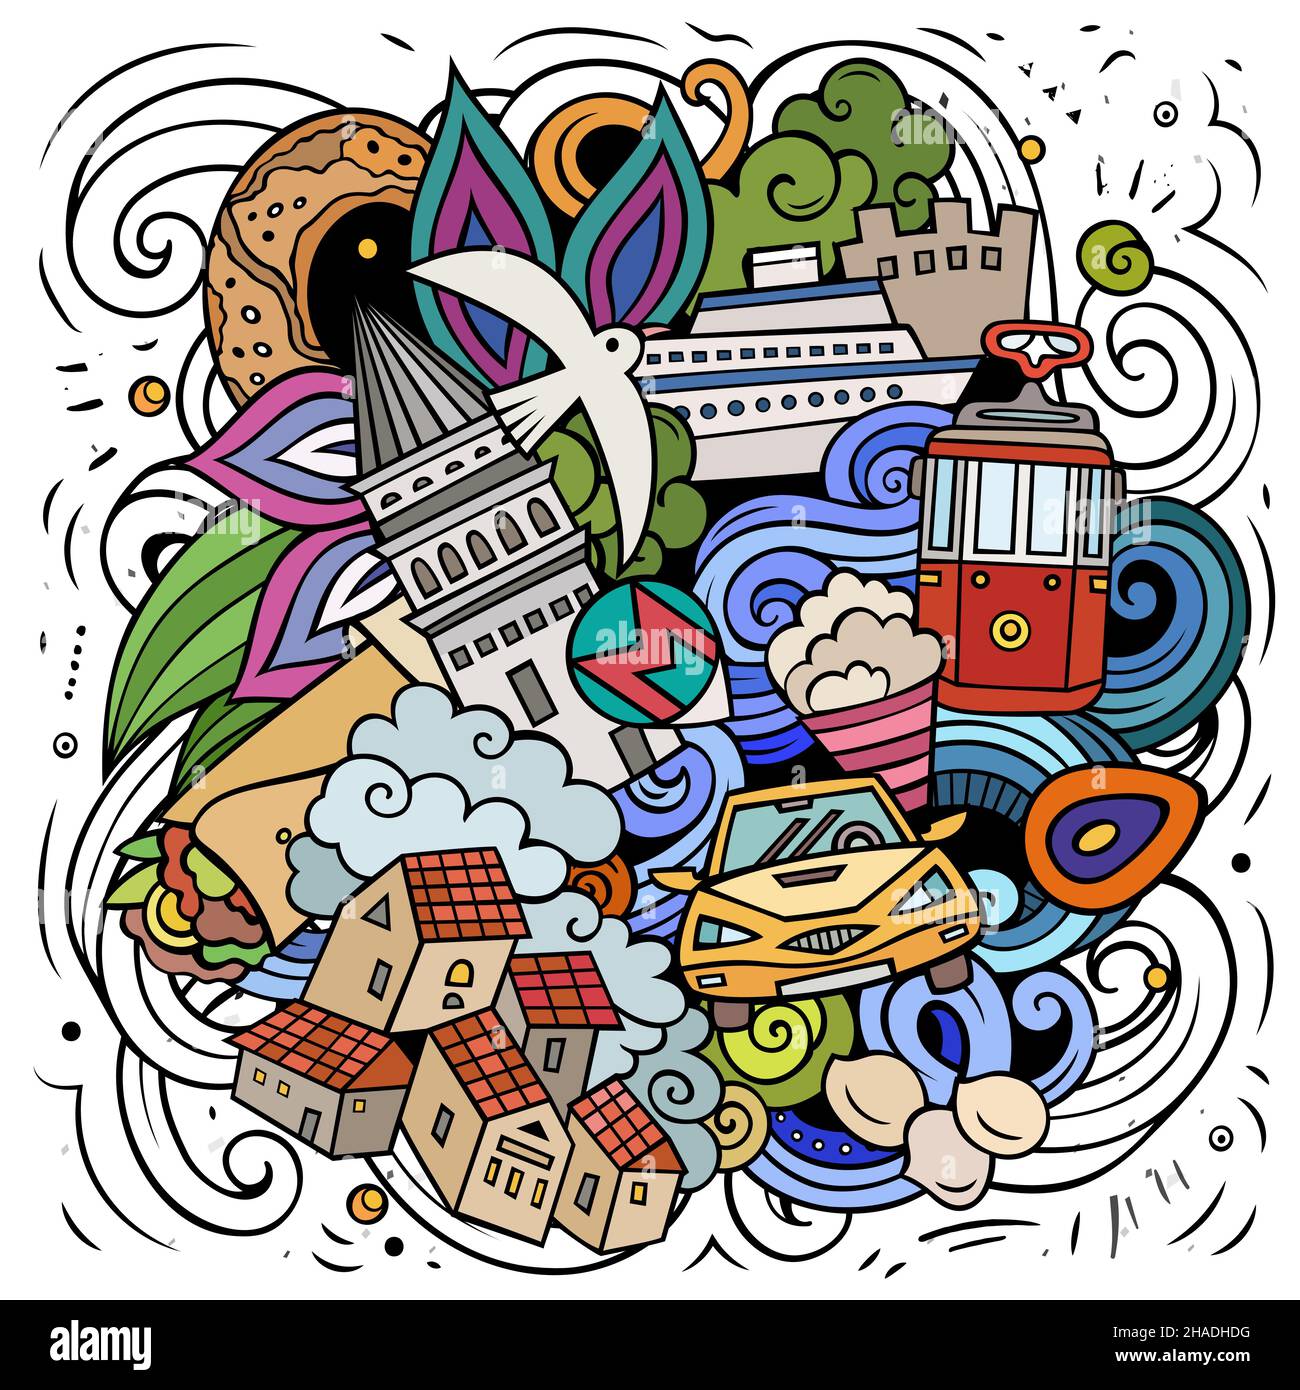 Istanbul cartoon vettore Doodle illustrazione. Composizione colorata e dettagliata con molti oggetti e simboli turchi. Illustrazione Vettoriale